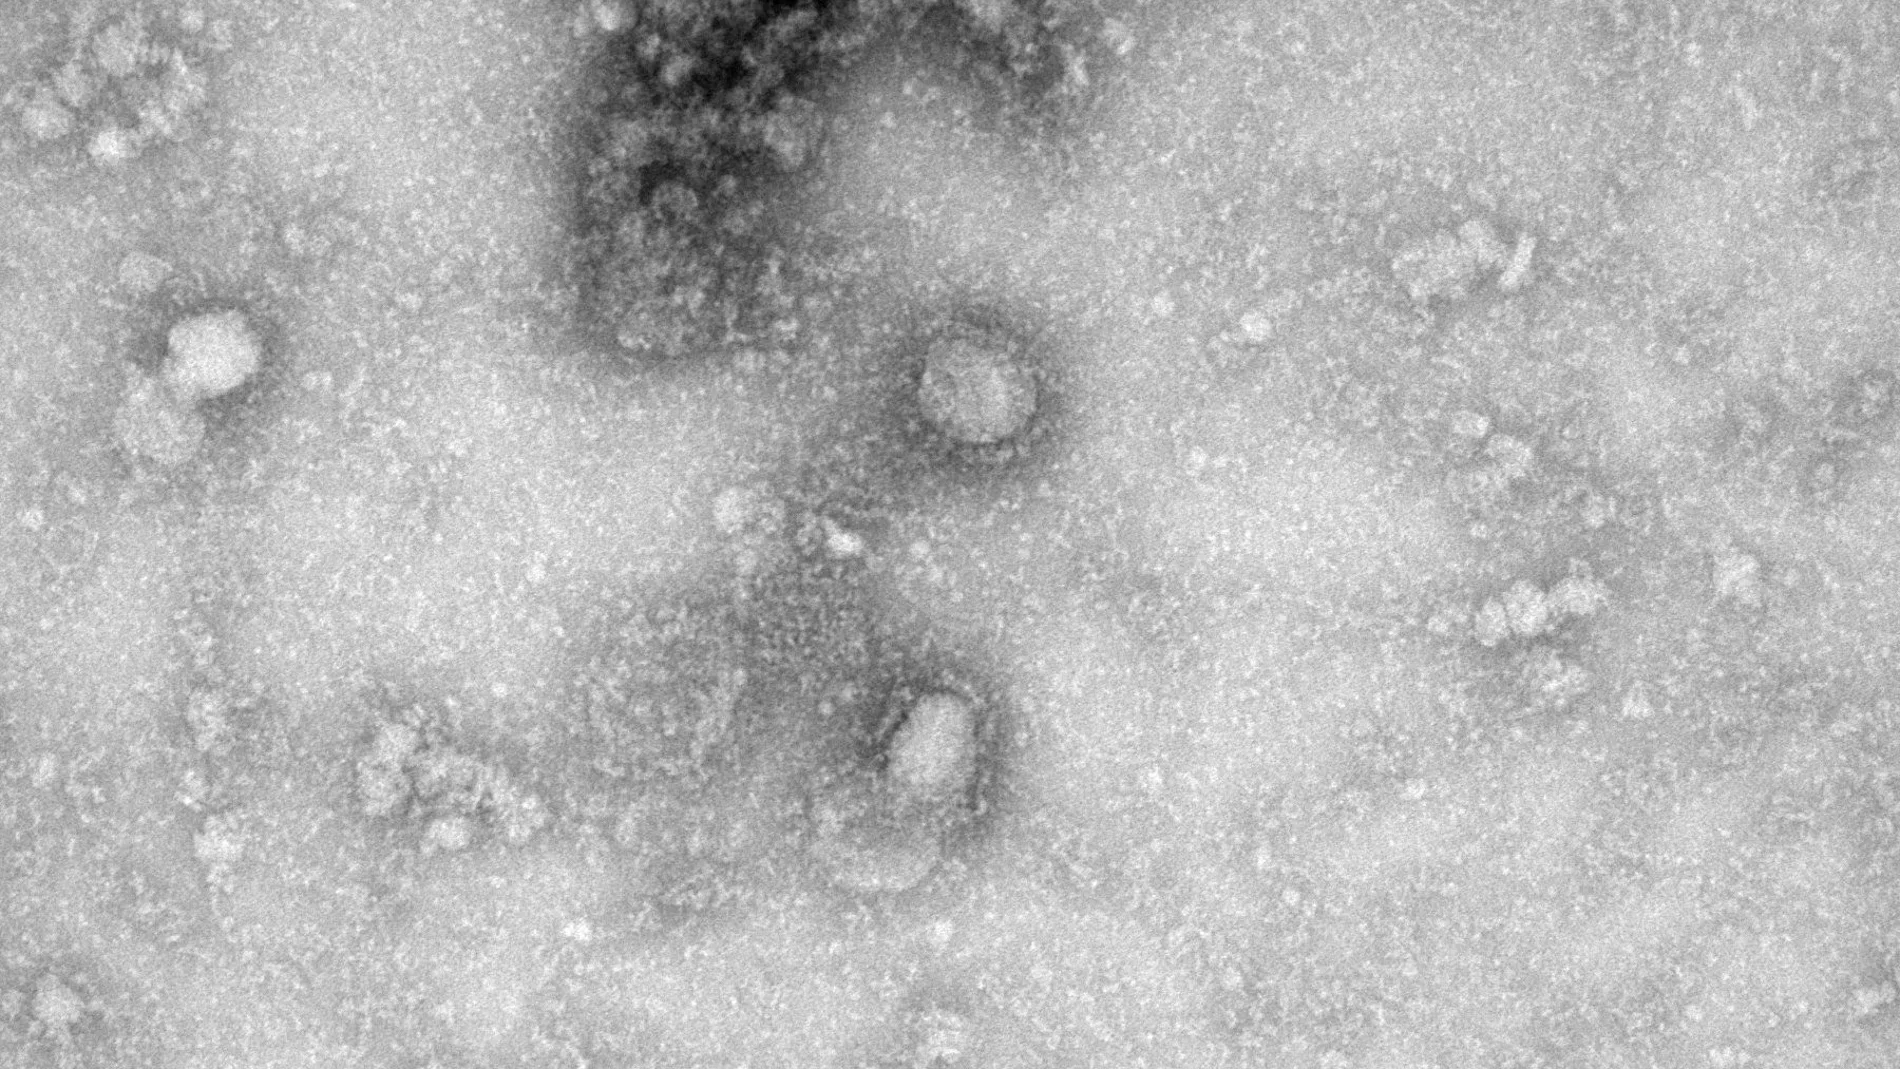 Imagen microscópica de la primera cepa del virus